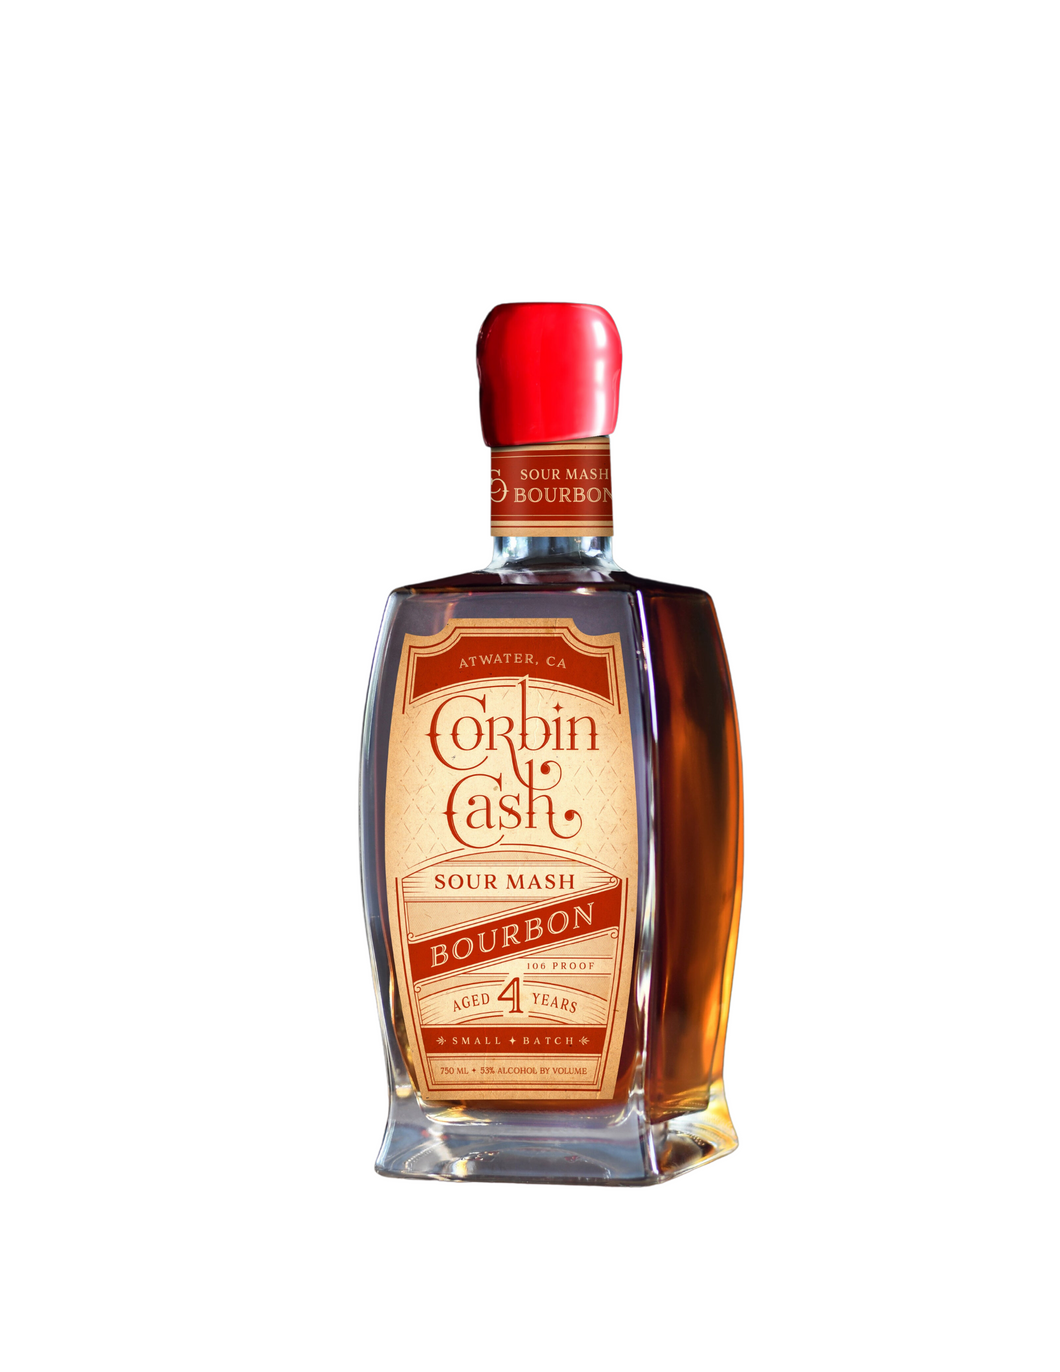 Corbin Cash Sour Mash Bourbon - 750 ml